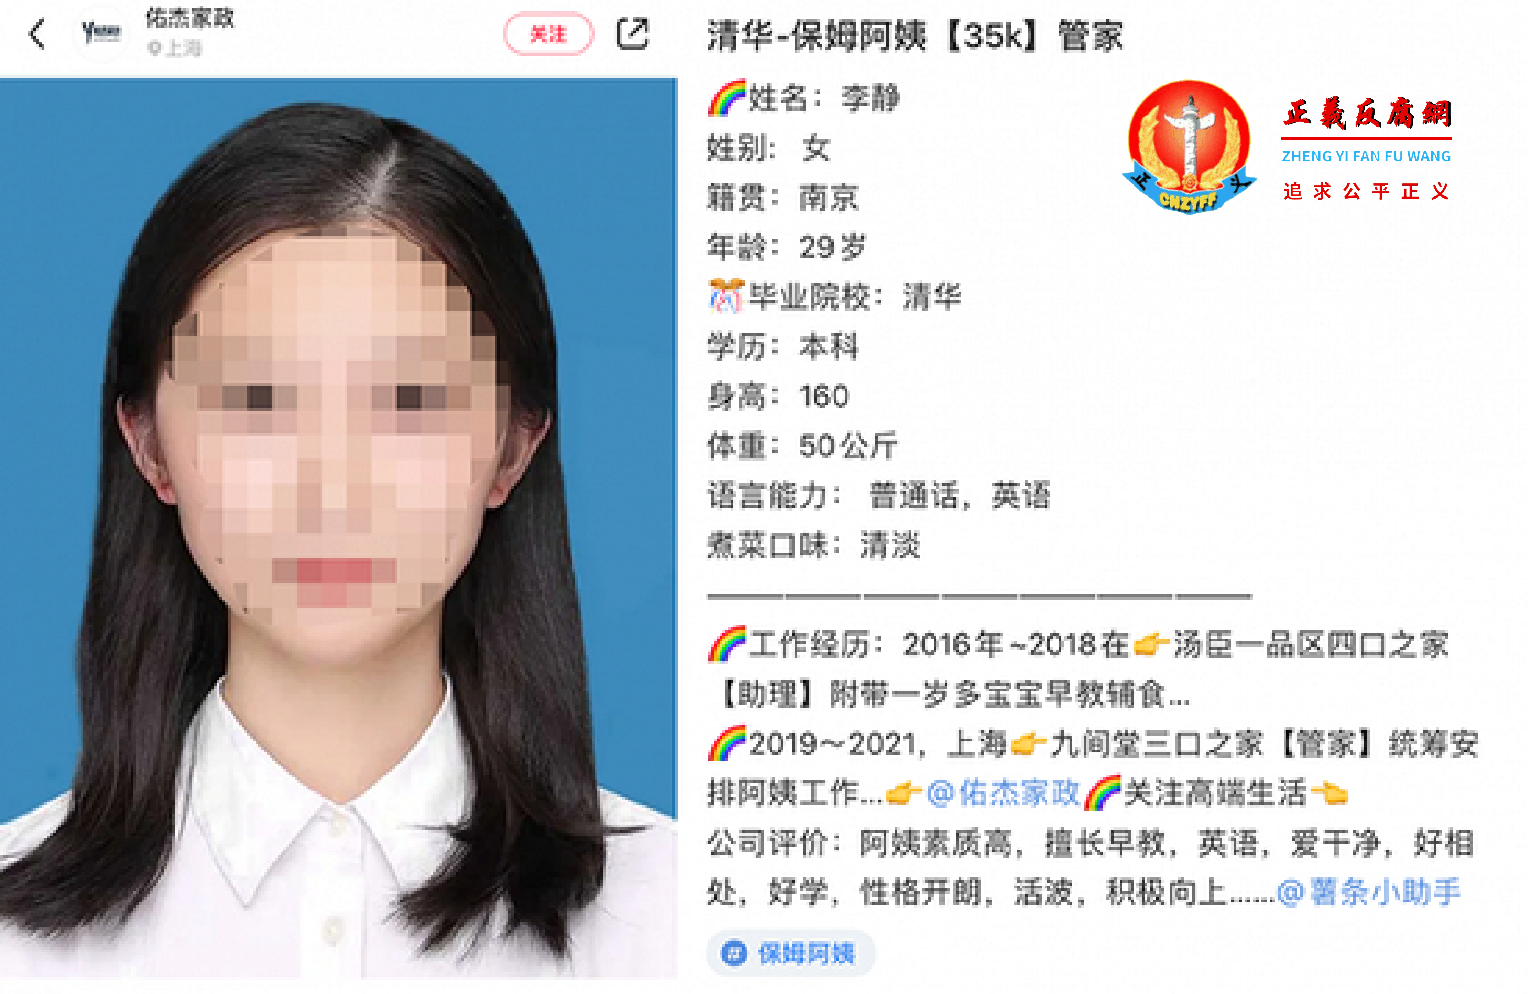 上海一间家政公司发布的一则求职广告引发热议：一名清华毕业的女生应征当保姆，开出的月薪要求为3.5万元。.png